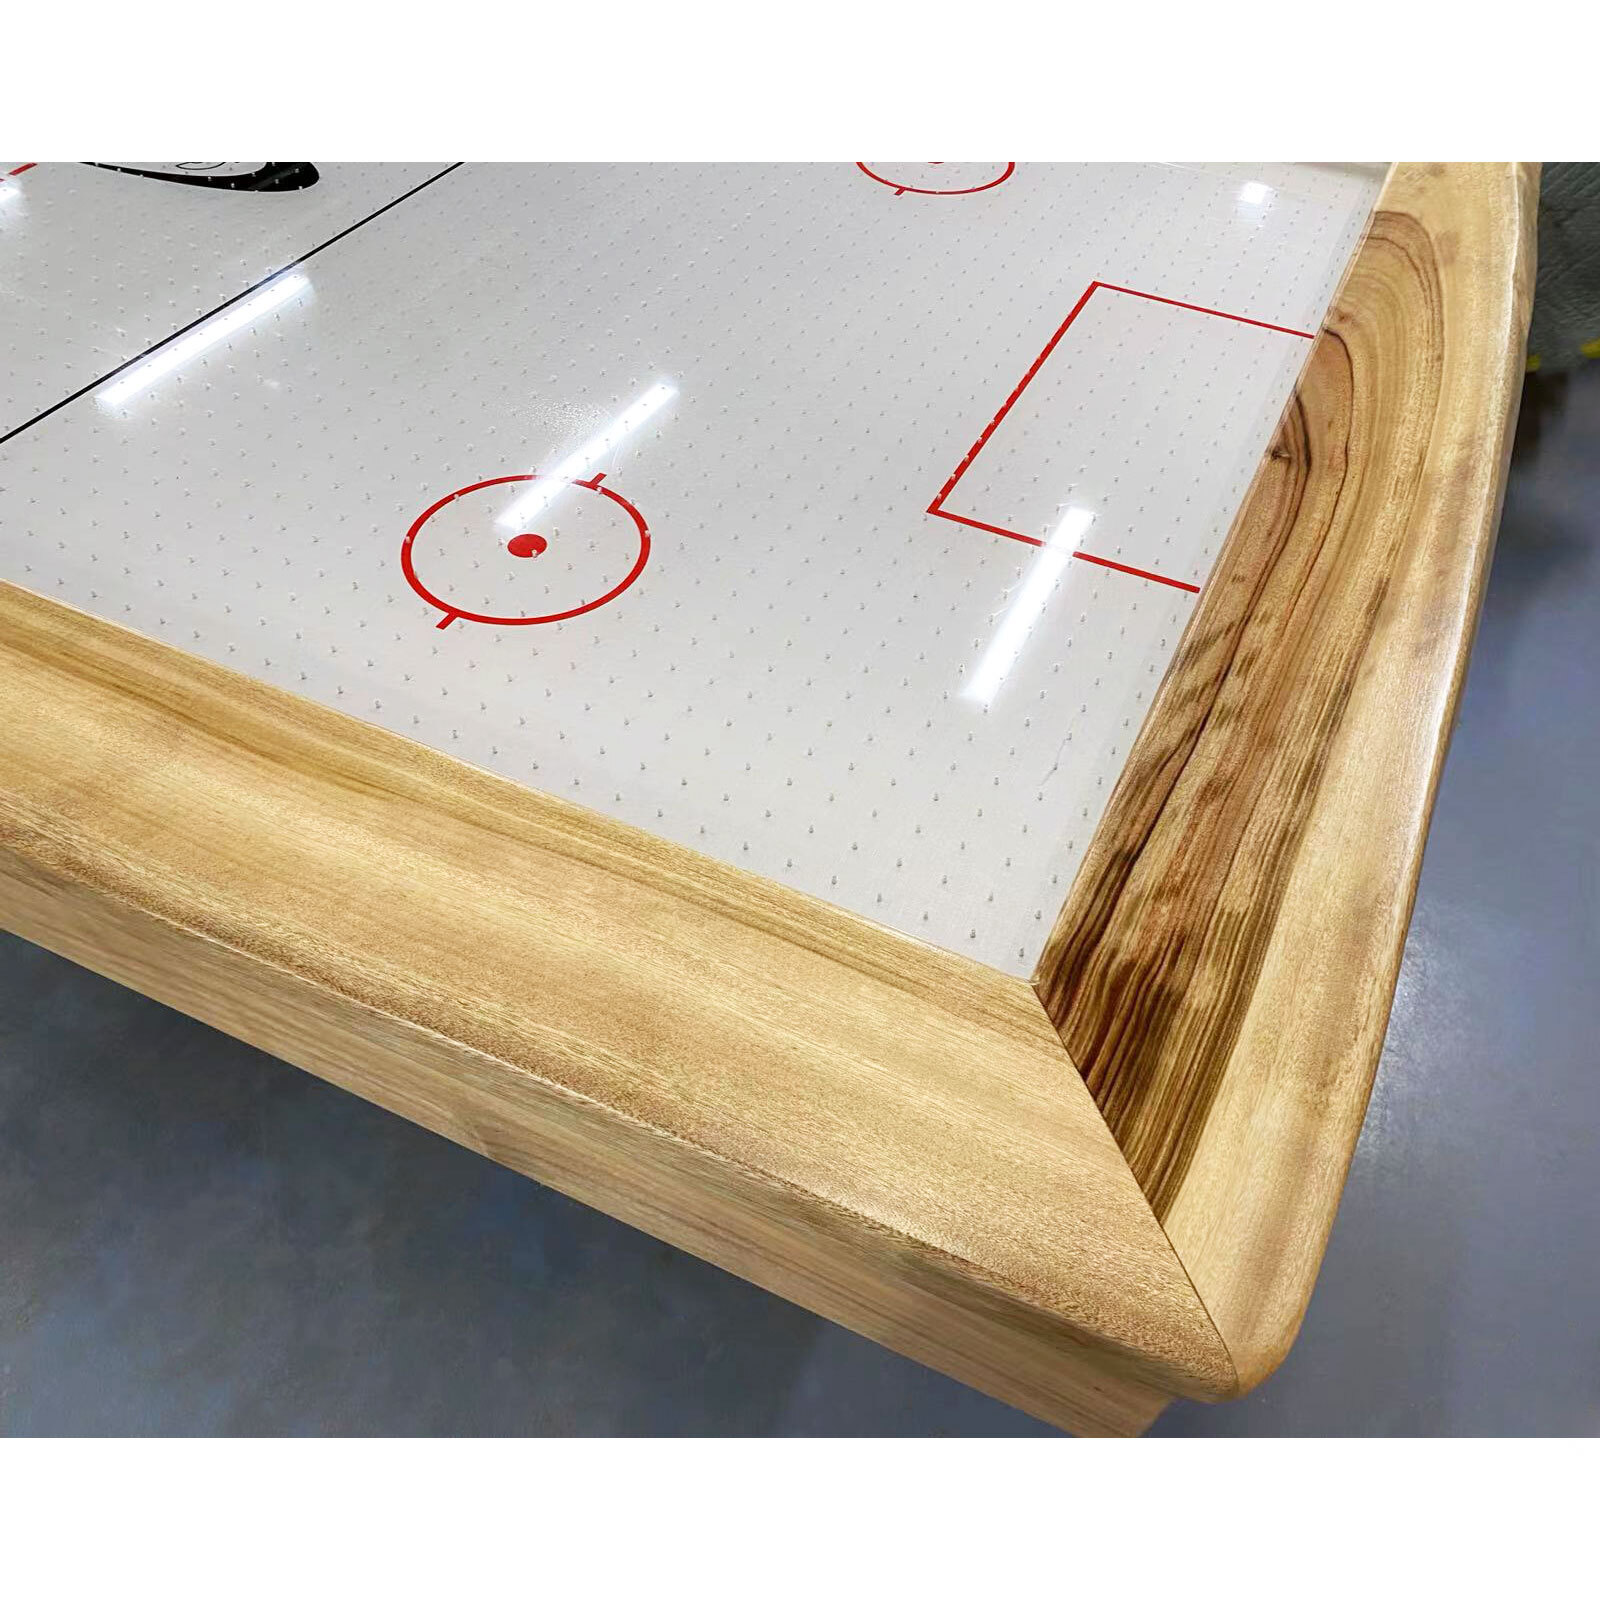 8ft Homestead Air Hockey Table - Acrylic base (LED installed)